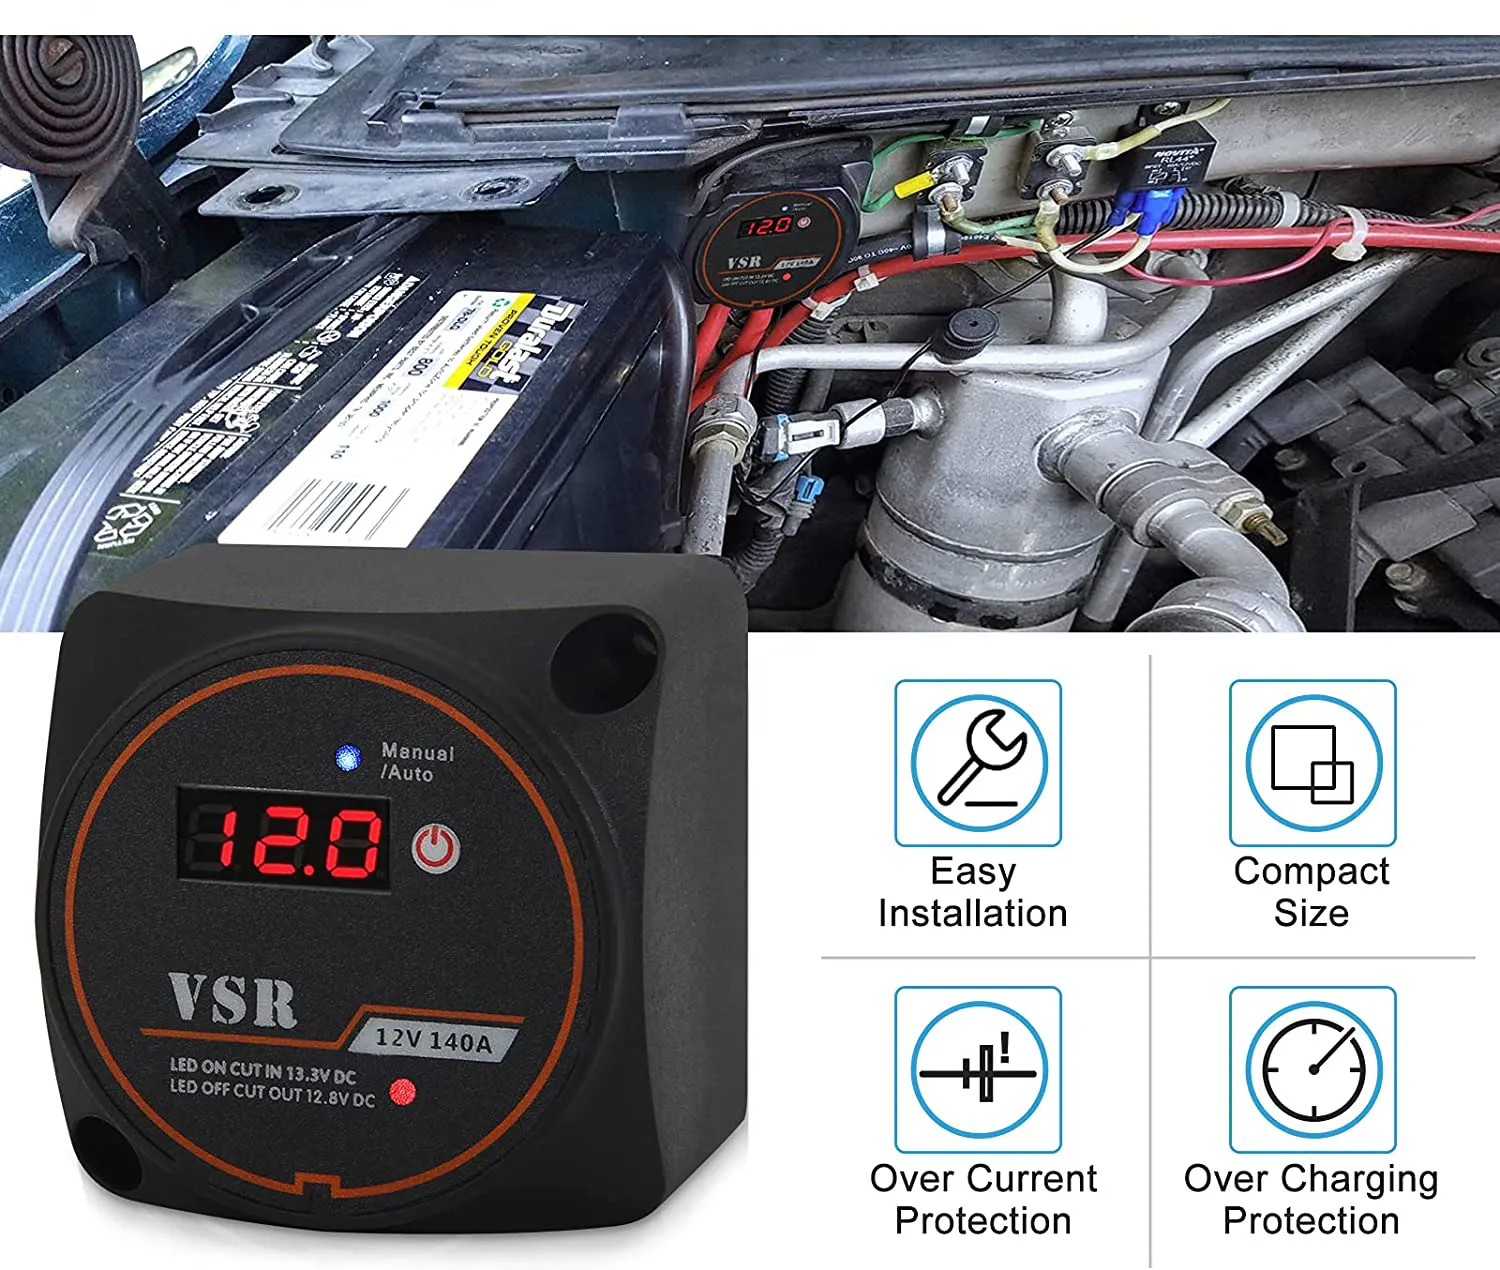 Aislador de batería inteligente con pantalla de voltaje, relé sensible al voltaje (VSR), modo Manual y automático, aislador de batería de cargador automático para camión